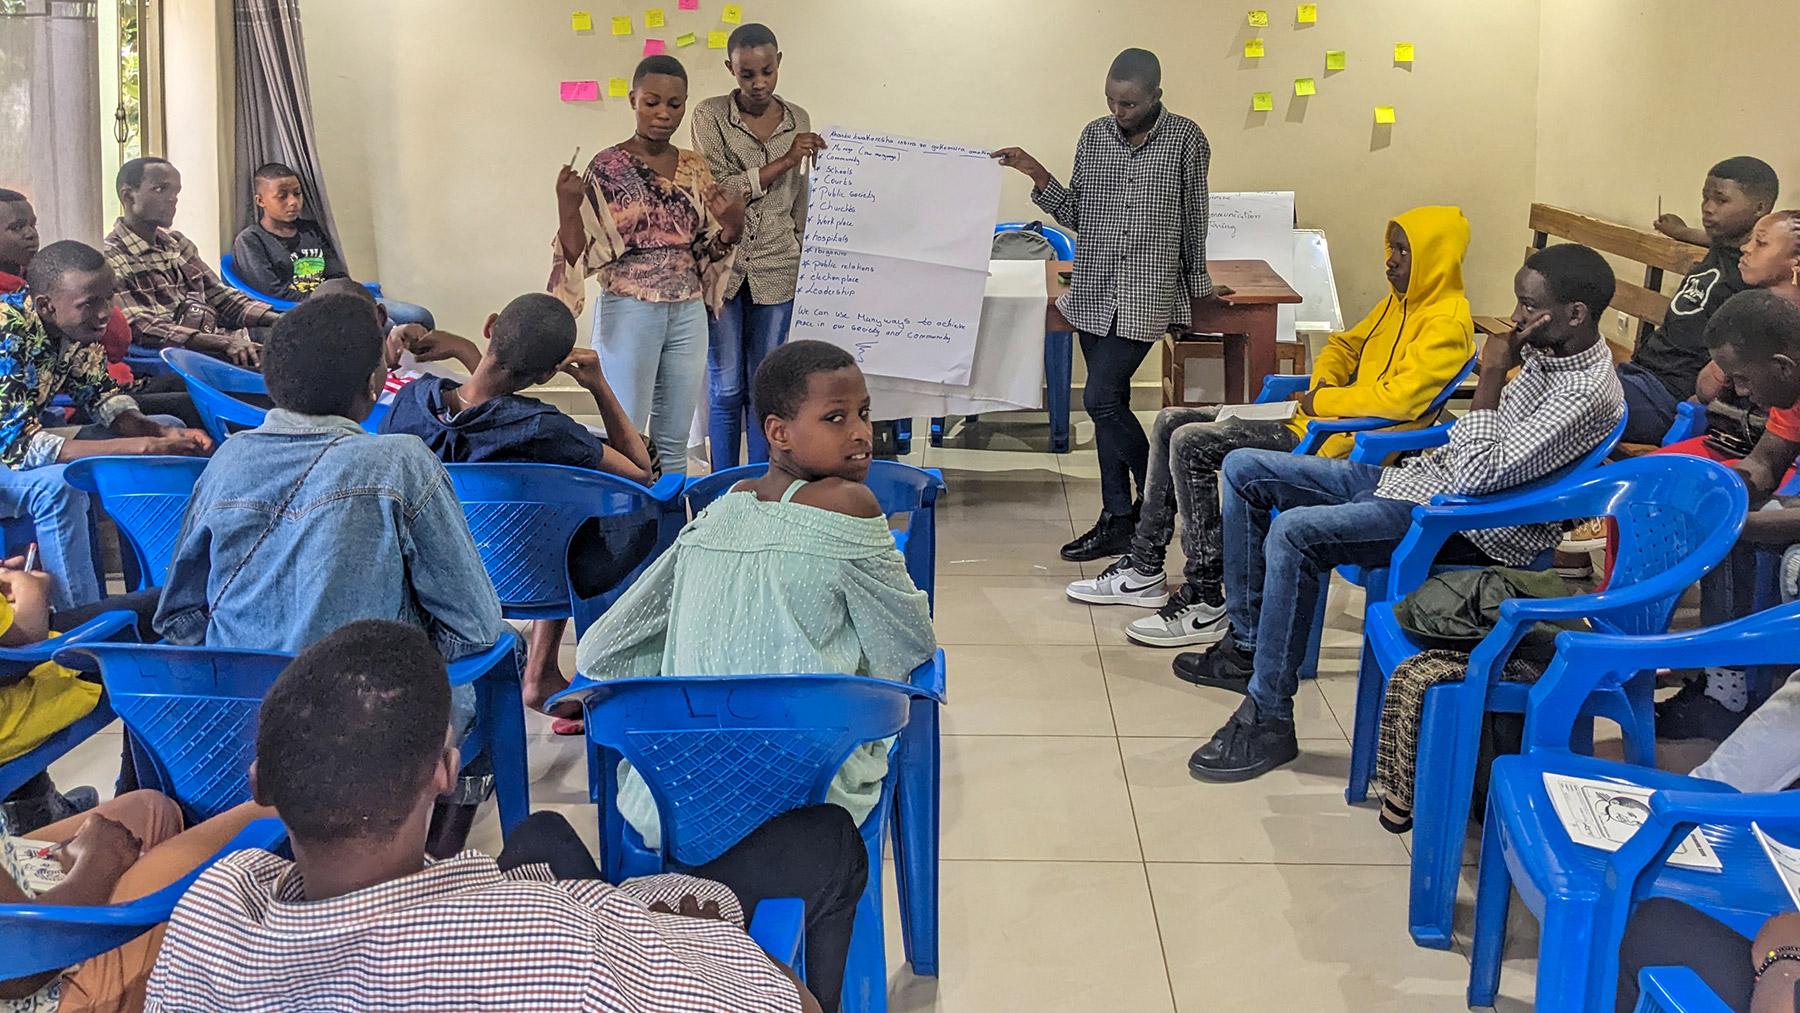 Junge Teilnehmende der LKR auf dem Schulungsworkshop im April 2023 berichten, wie sie die erworbenen Fähigkeiten für die Friedensförderung und die Lösung von Konflikten einsetzen wollen. Foto: LCR/Geoffrey Munyaneza 